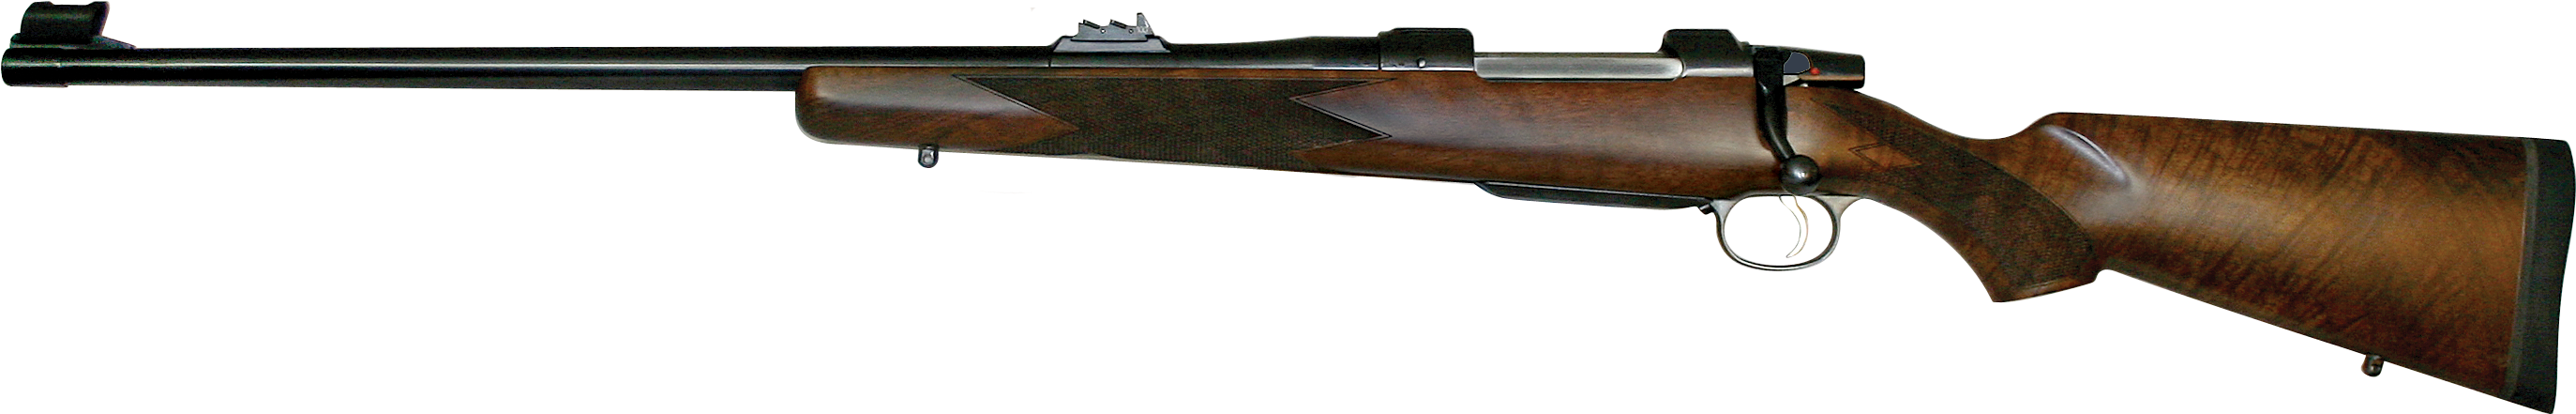 Cz 550 American Safari Magnum Left-hand 375 H&h - 410 Gun (2838x1892), Png Download